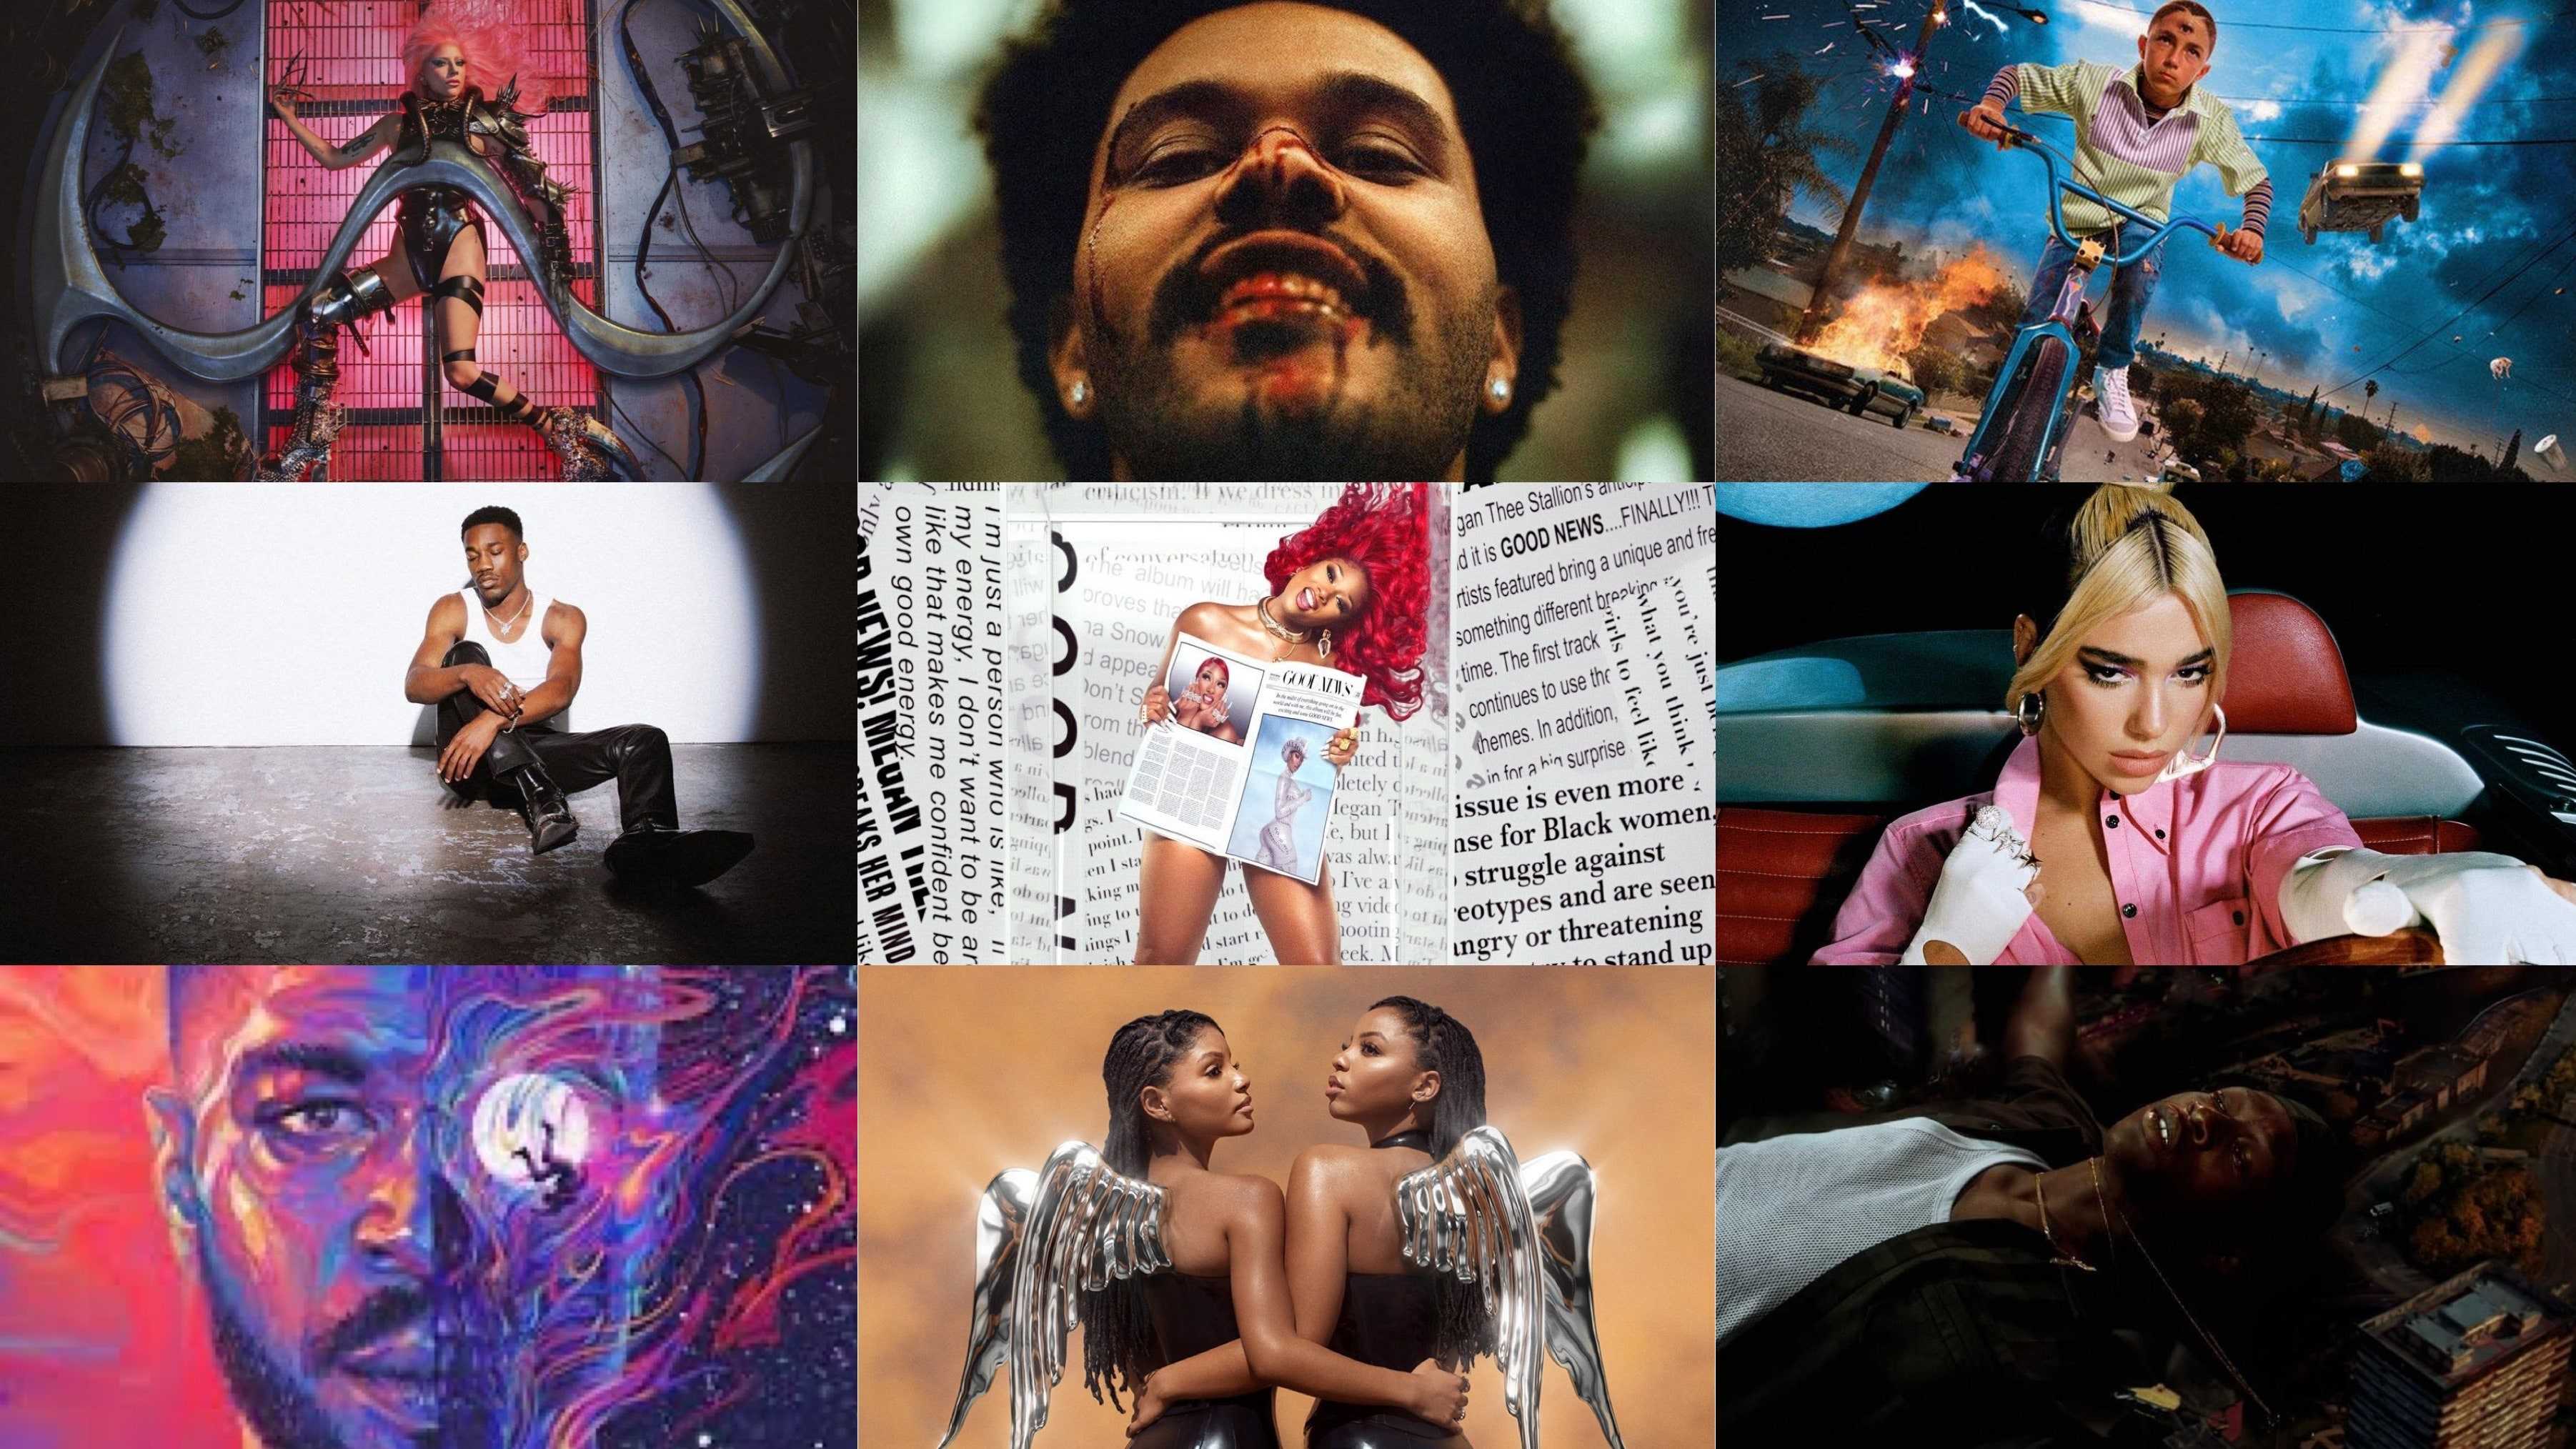 Лучшие альбомы 2020 года: подводим музыкальные итоги года - satori